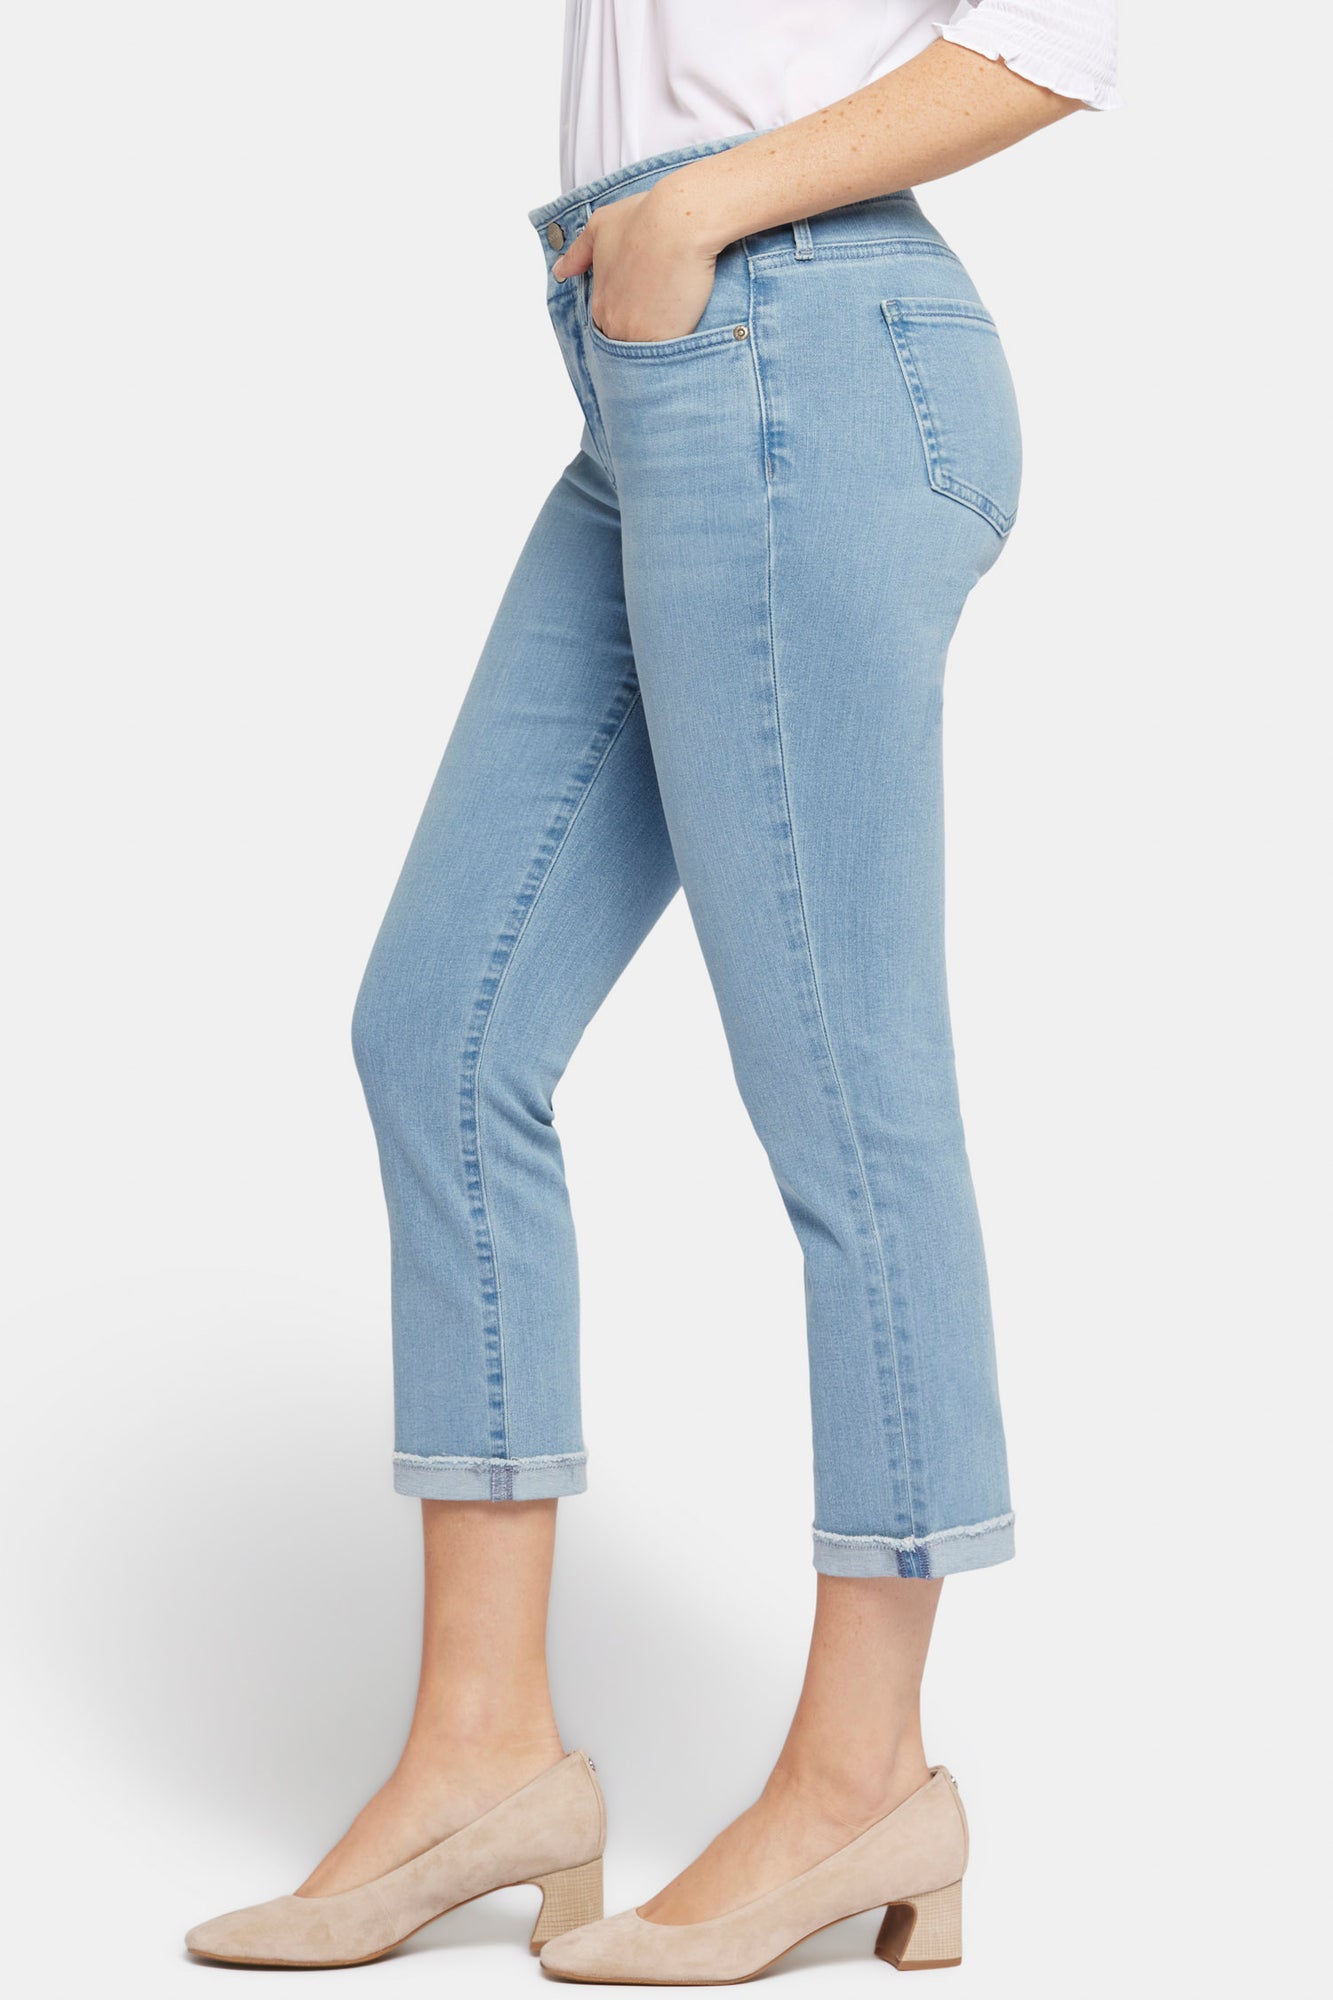 NYDJ Chloe Capri Jeans With Cuffs - Kingston